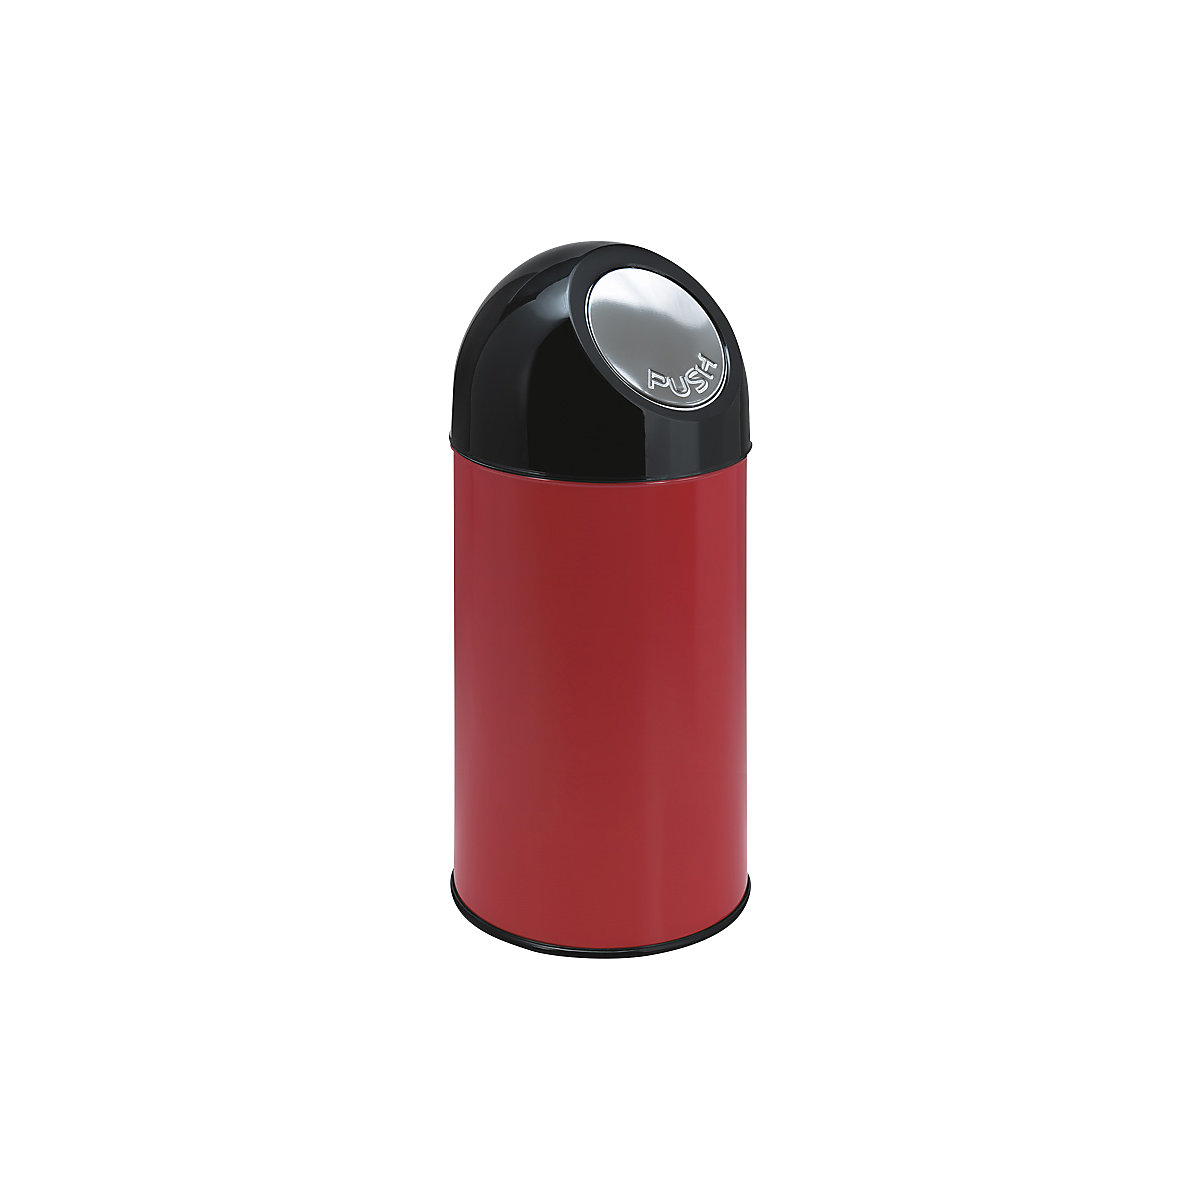 Odpadkový koš s funkcí Push, objem 40 l, pozinkovaná vnitřní nádoba, červená